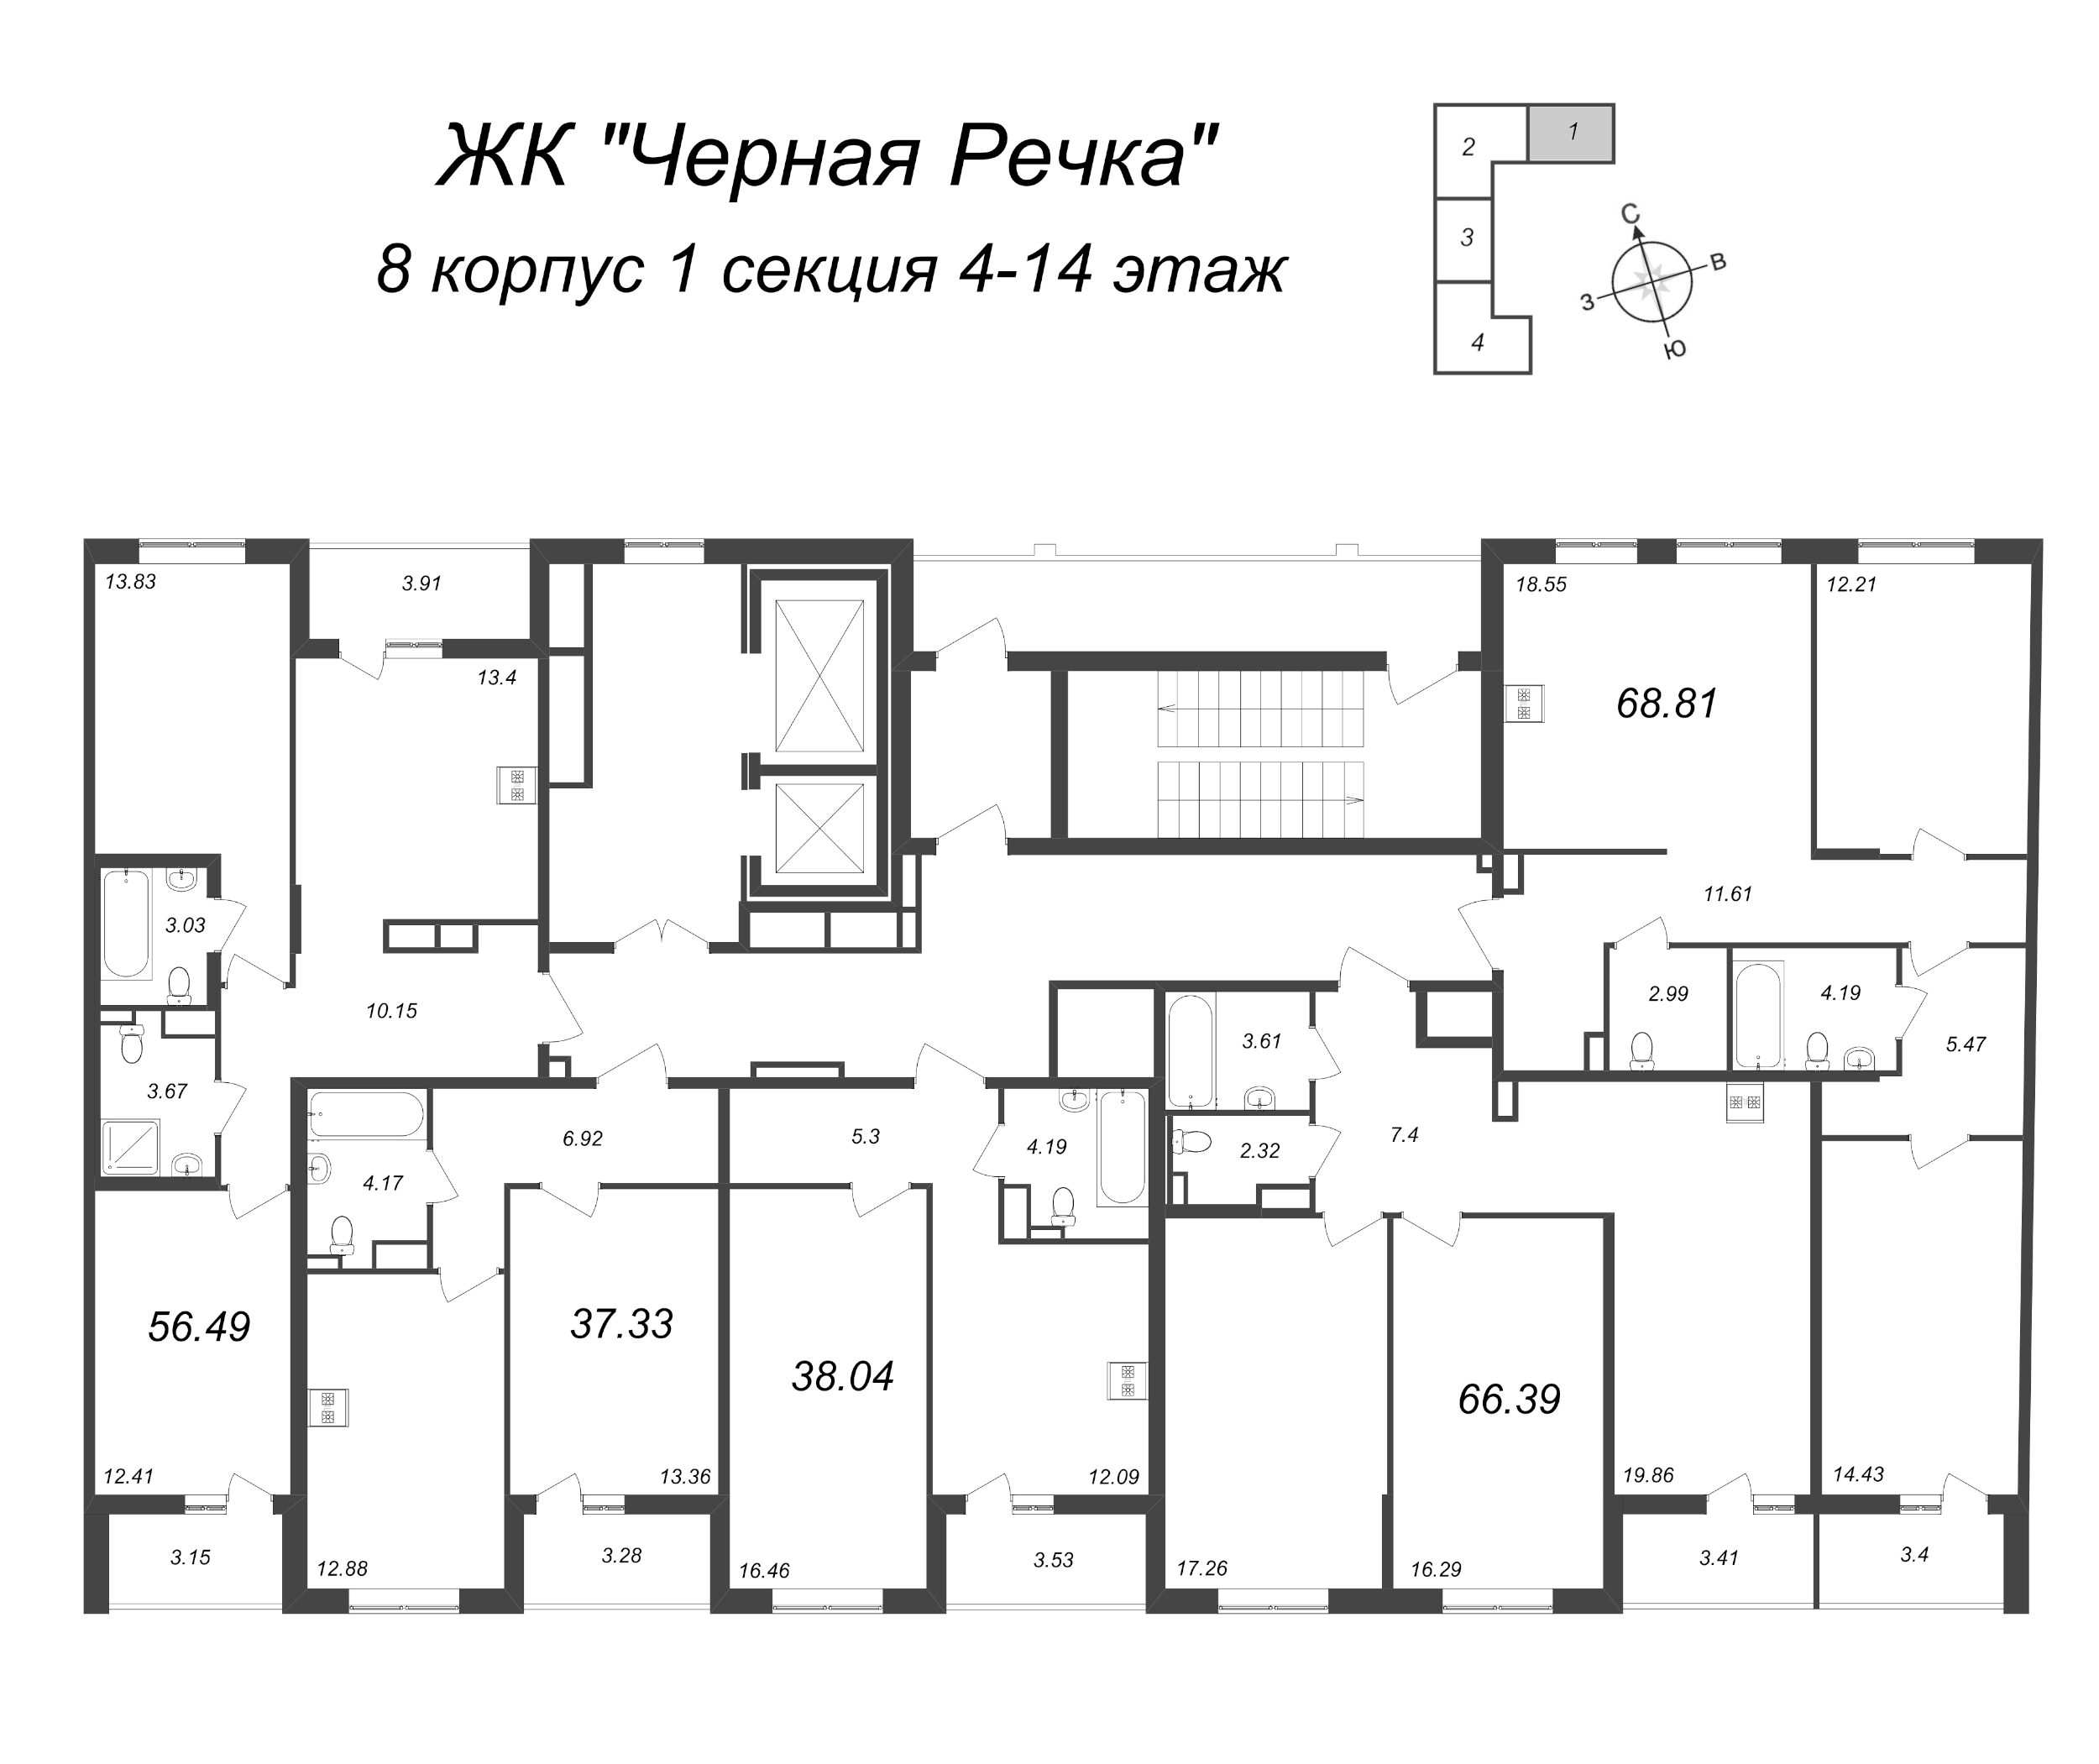 1-комнатная квартира, 38.04 м² в ЖК "Чёрная речка" - планировка этажа